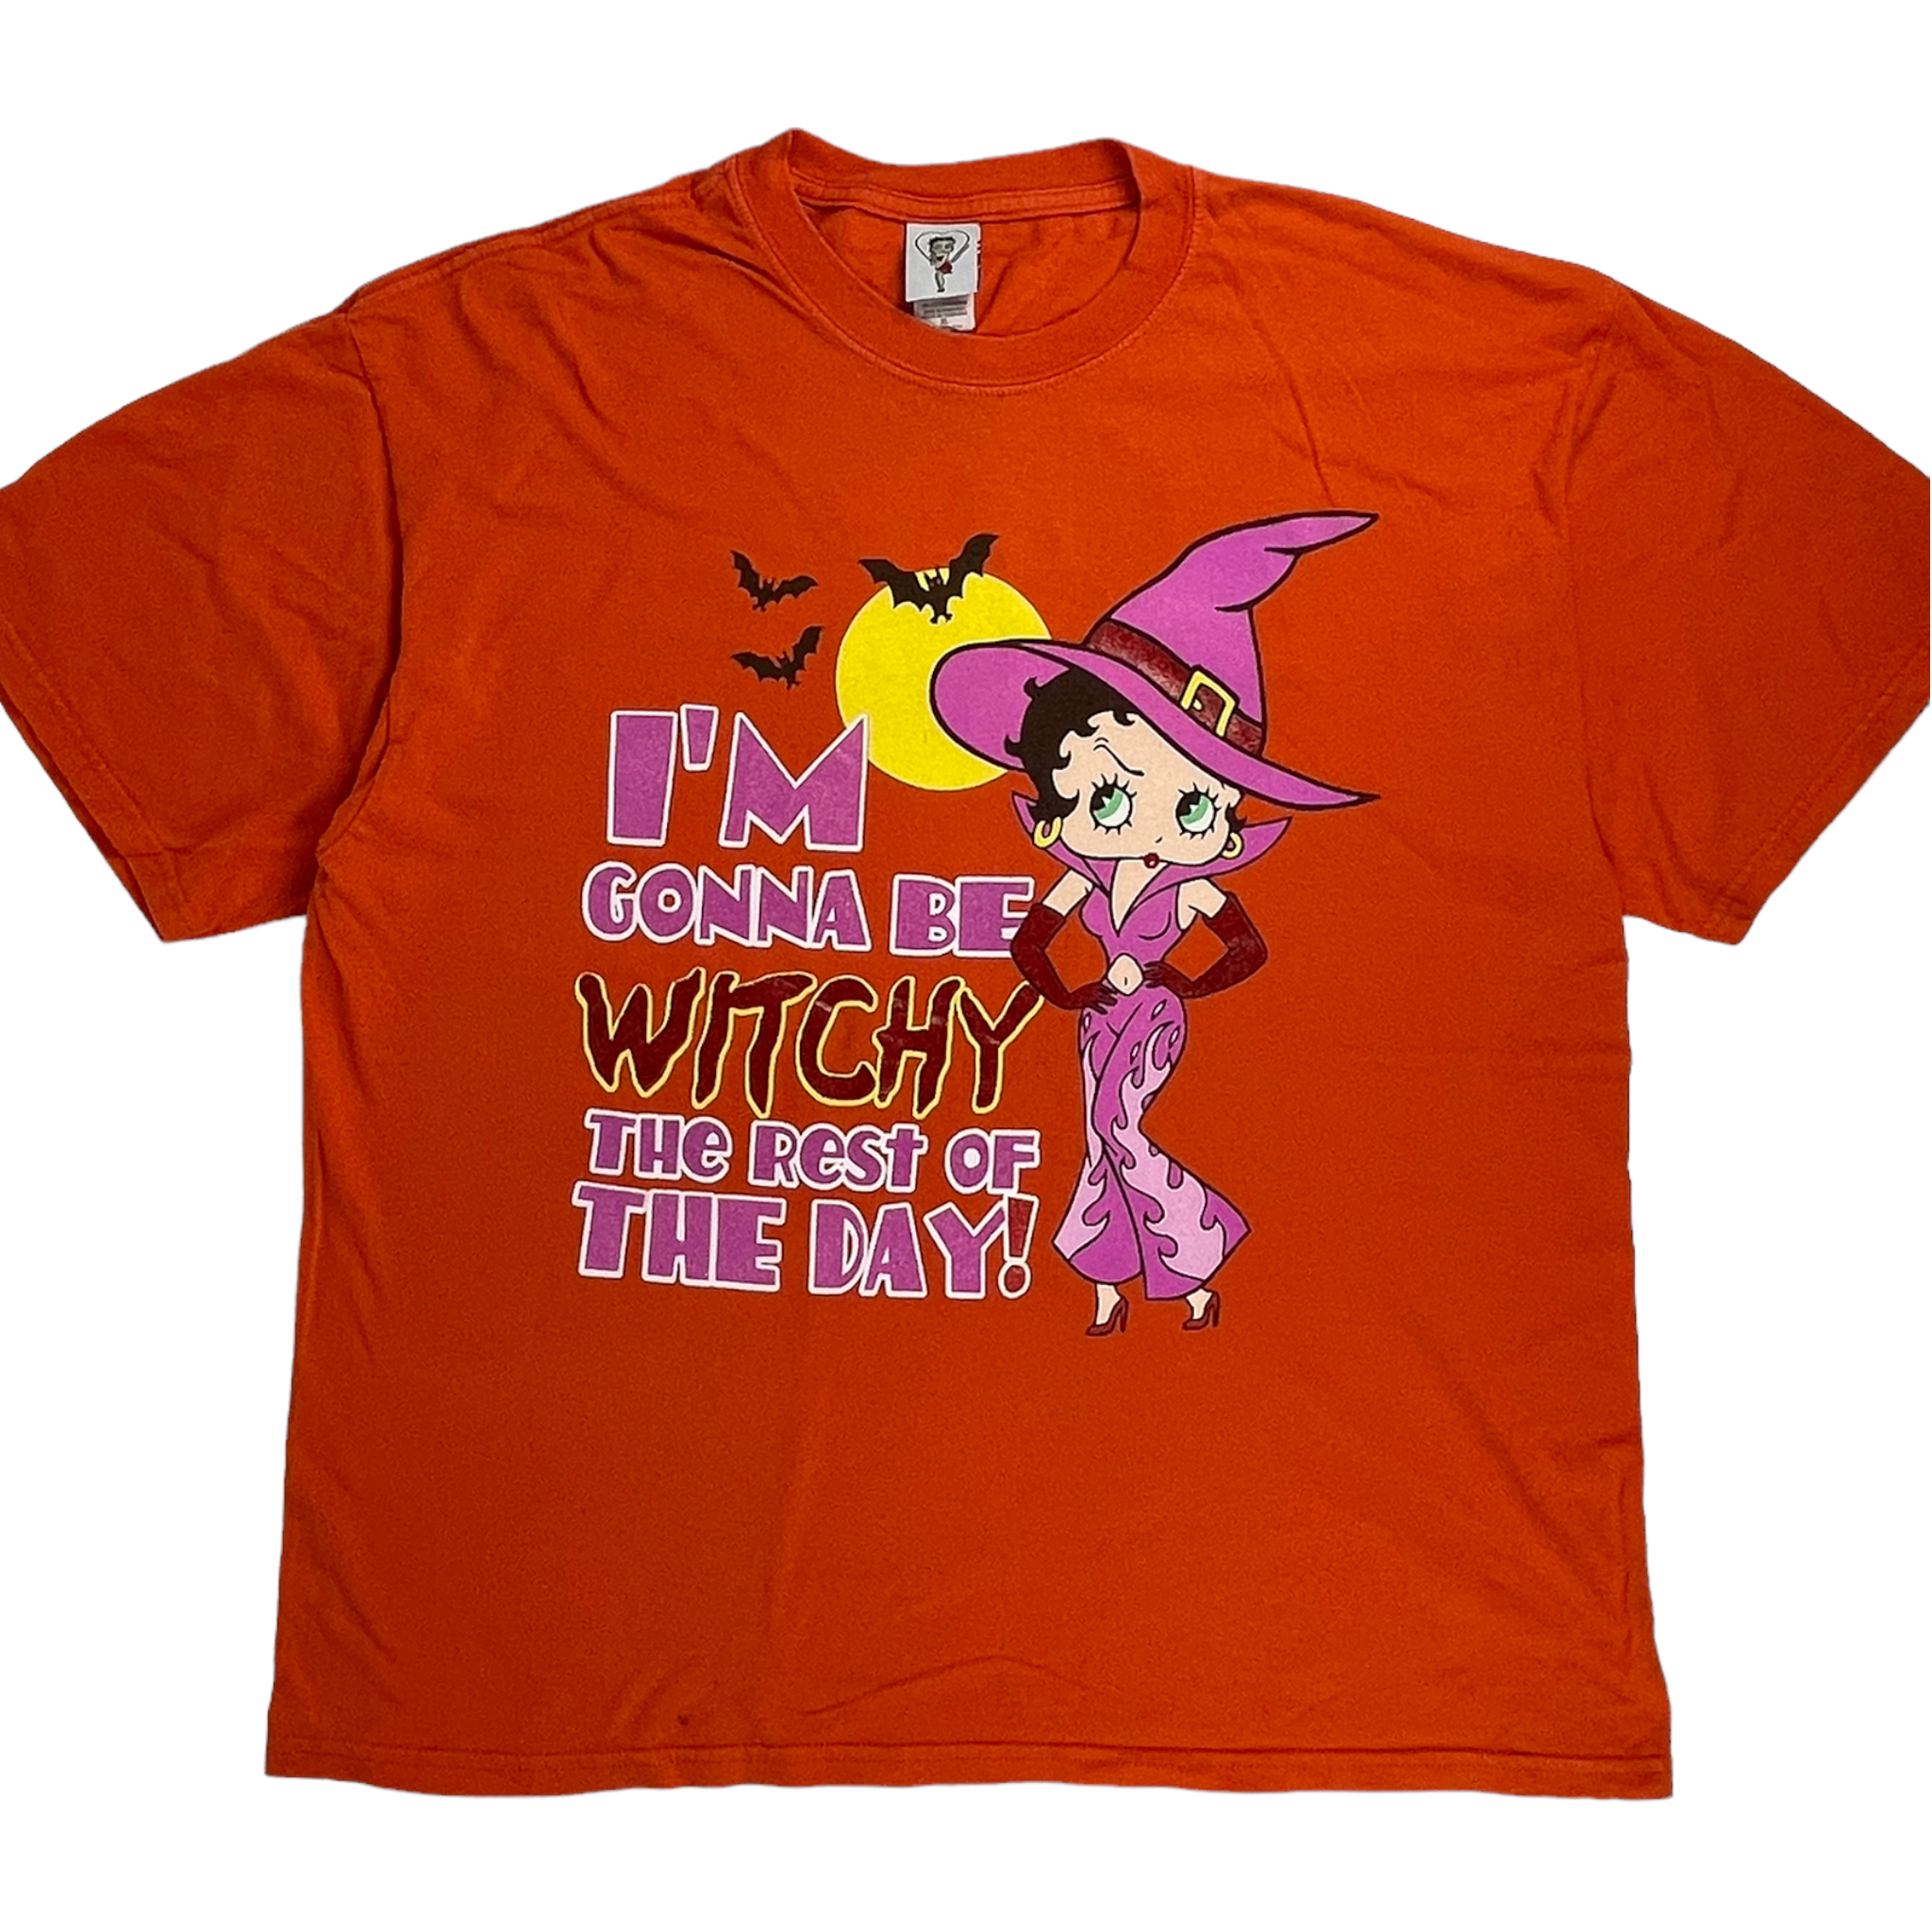 Vintage Betty Boop Halloween T-shirt - Restorecph